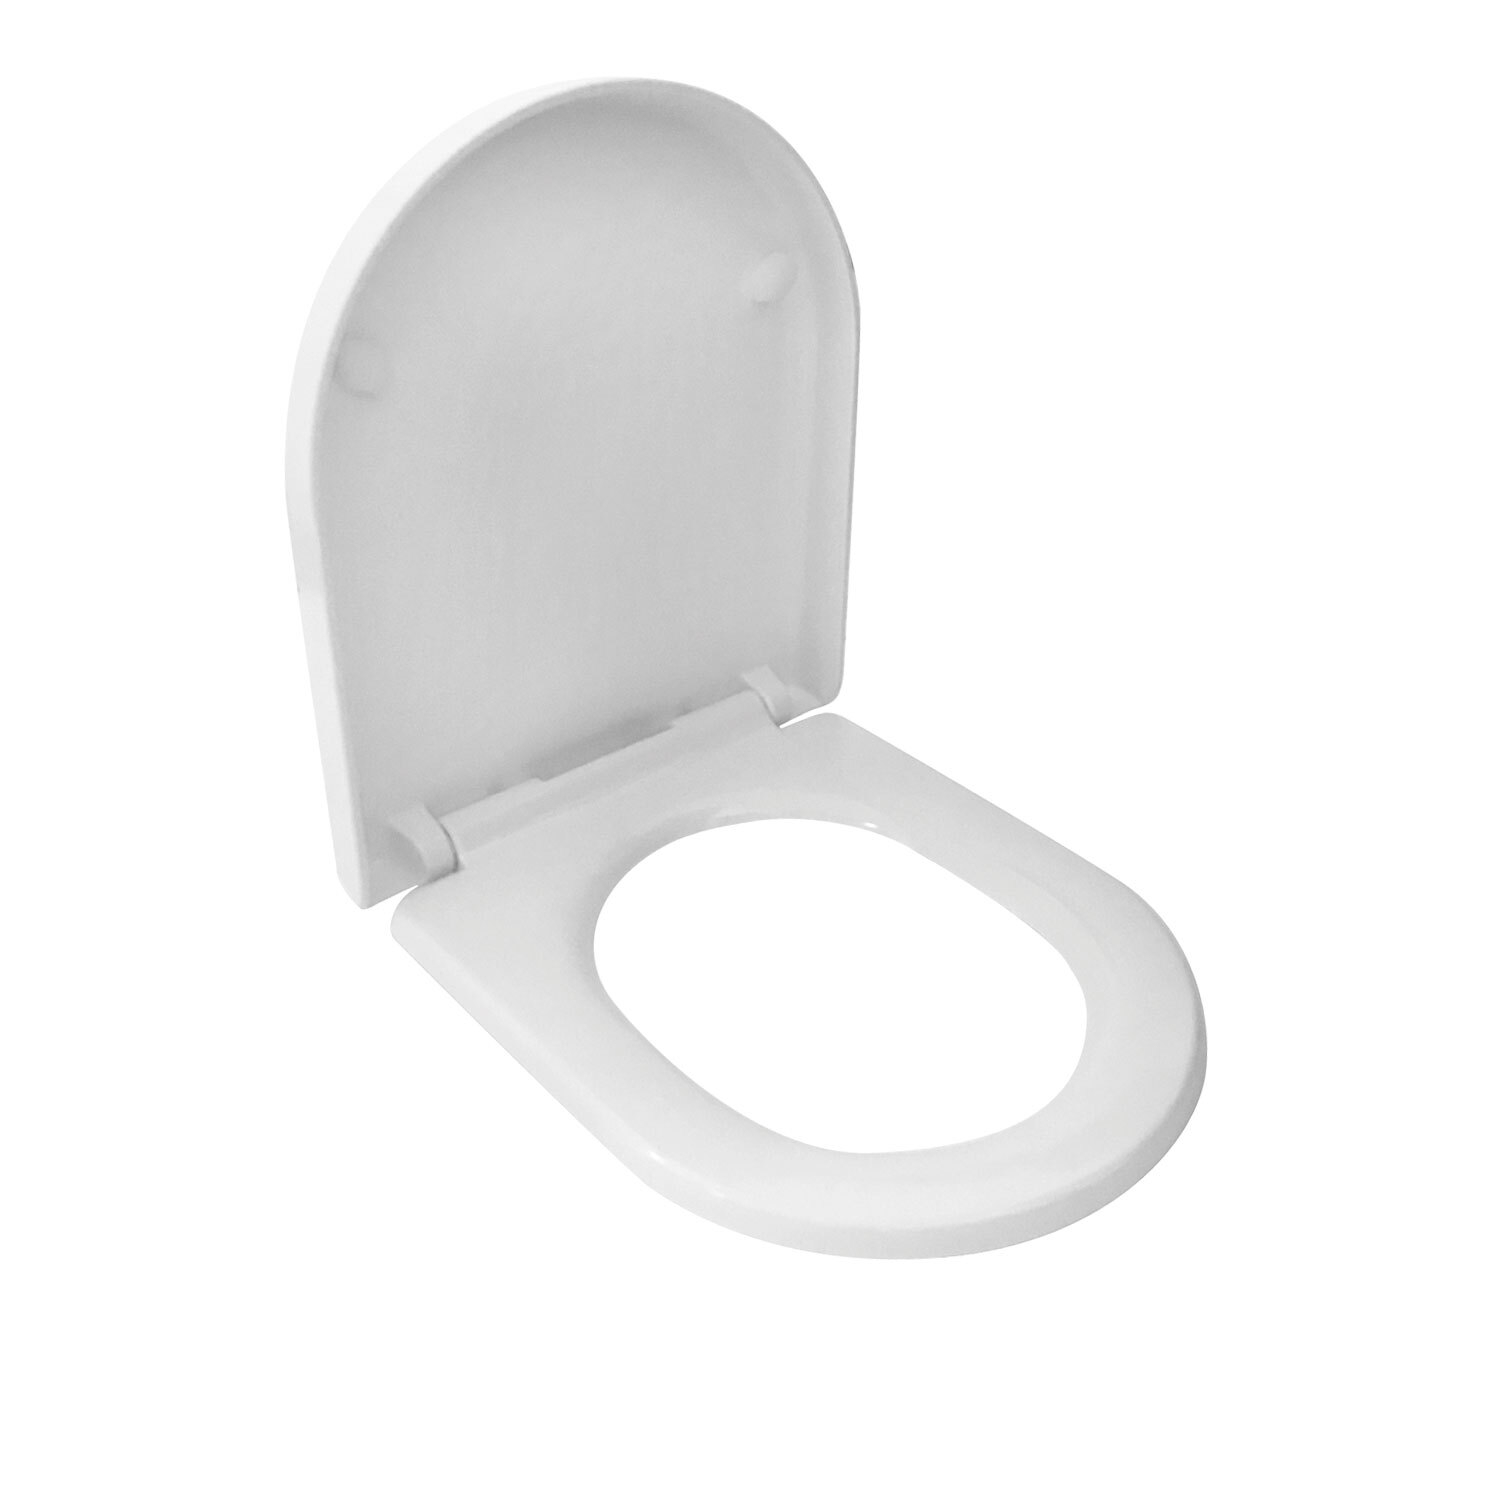 Mayfair Duroplast Toilet Seat Image 2